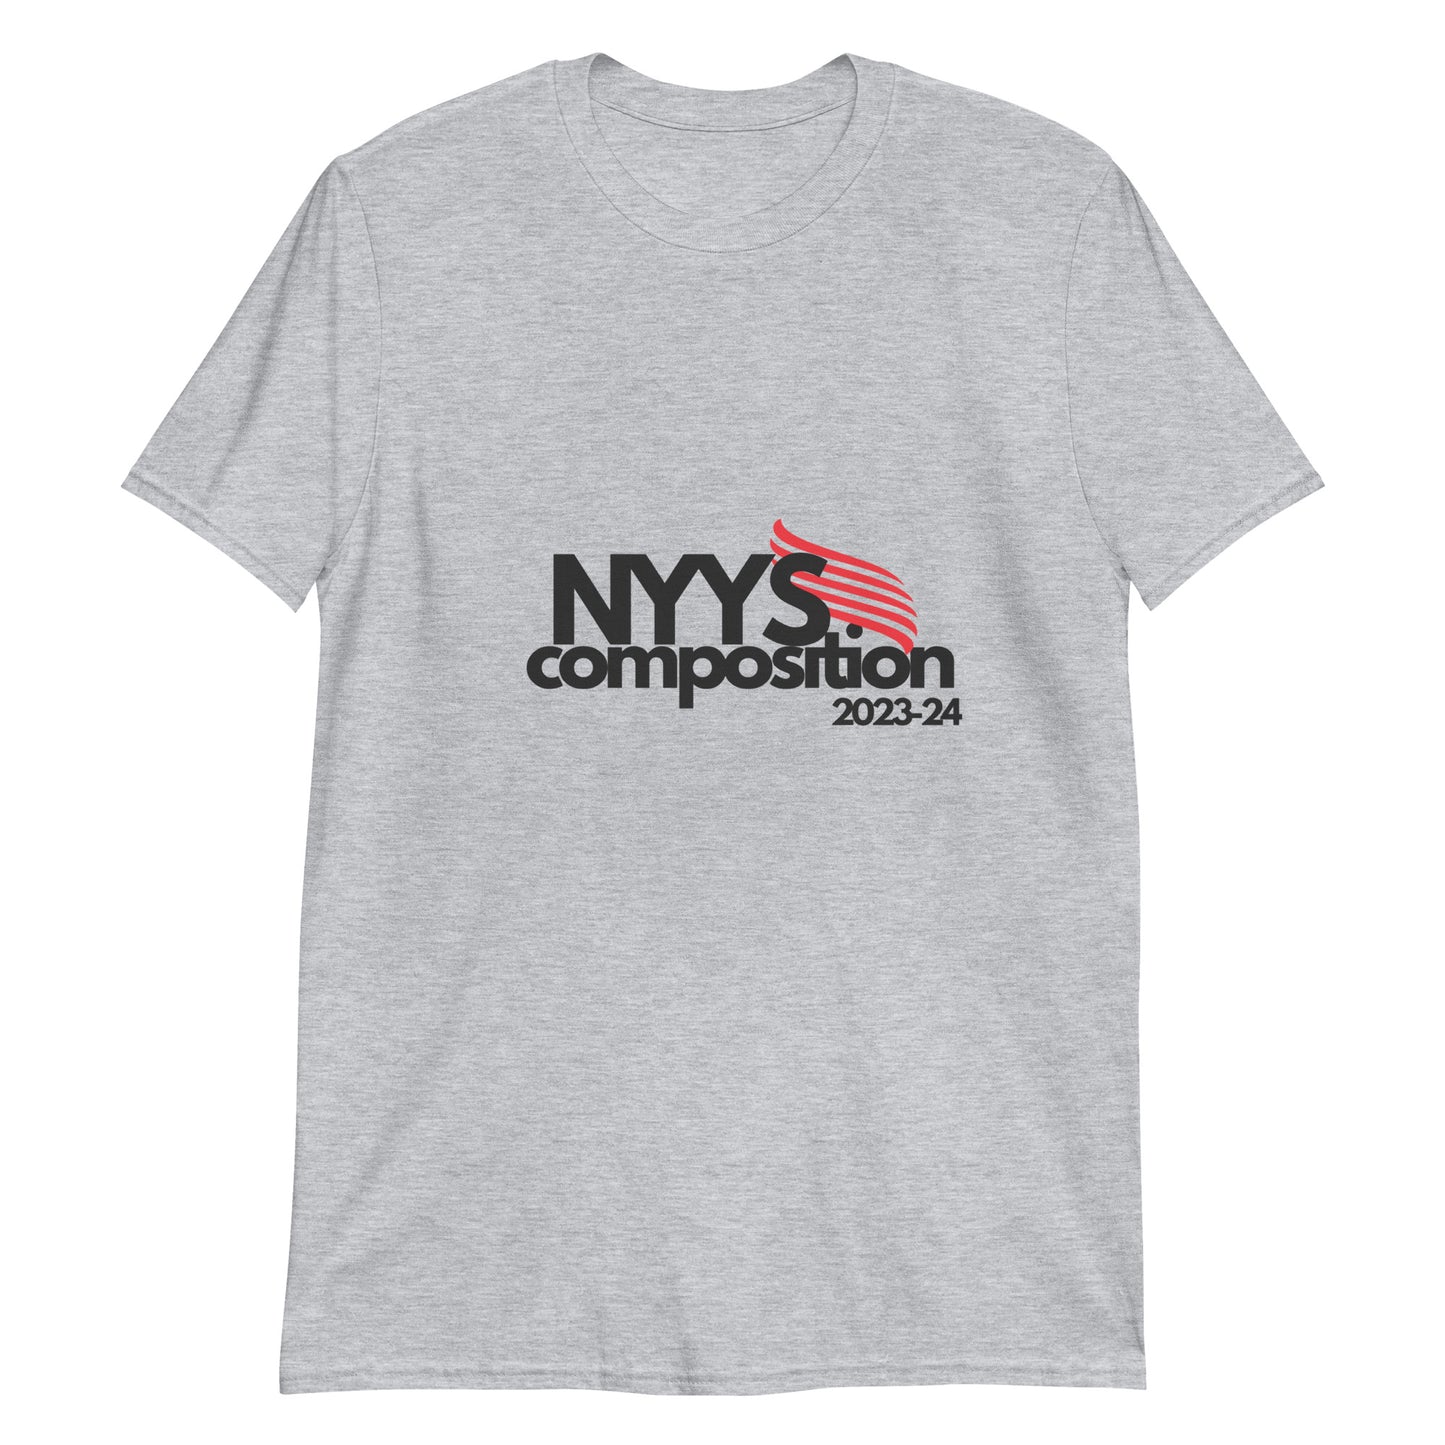 NYYS Composition Short-Sleeve Unisex T-Shirt